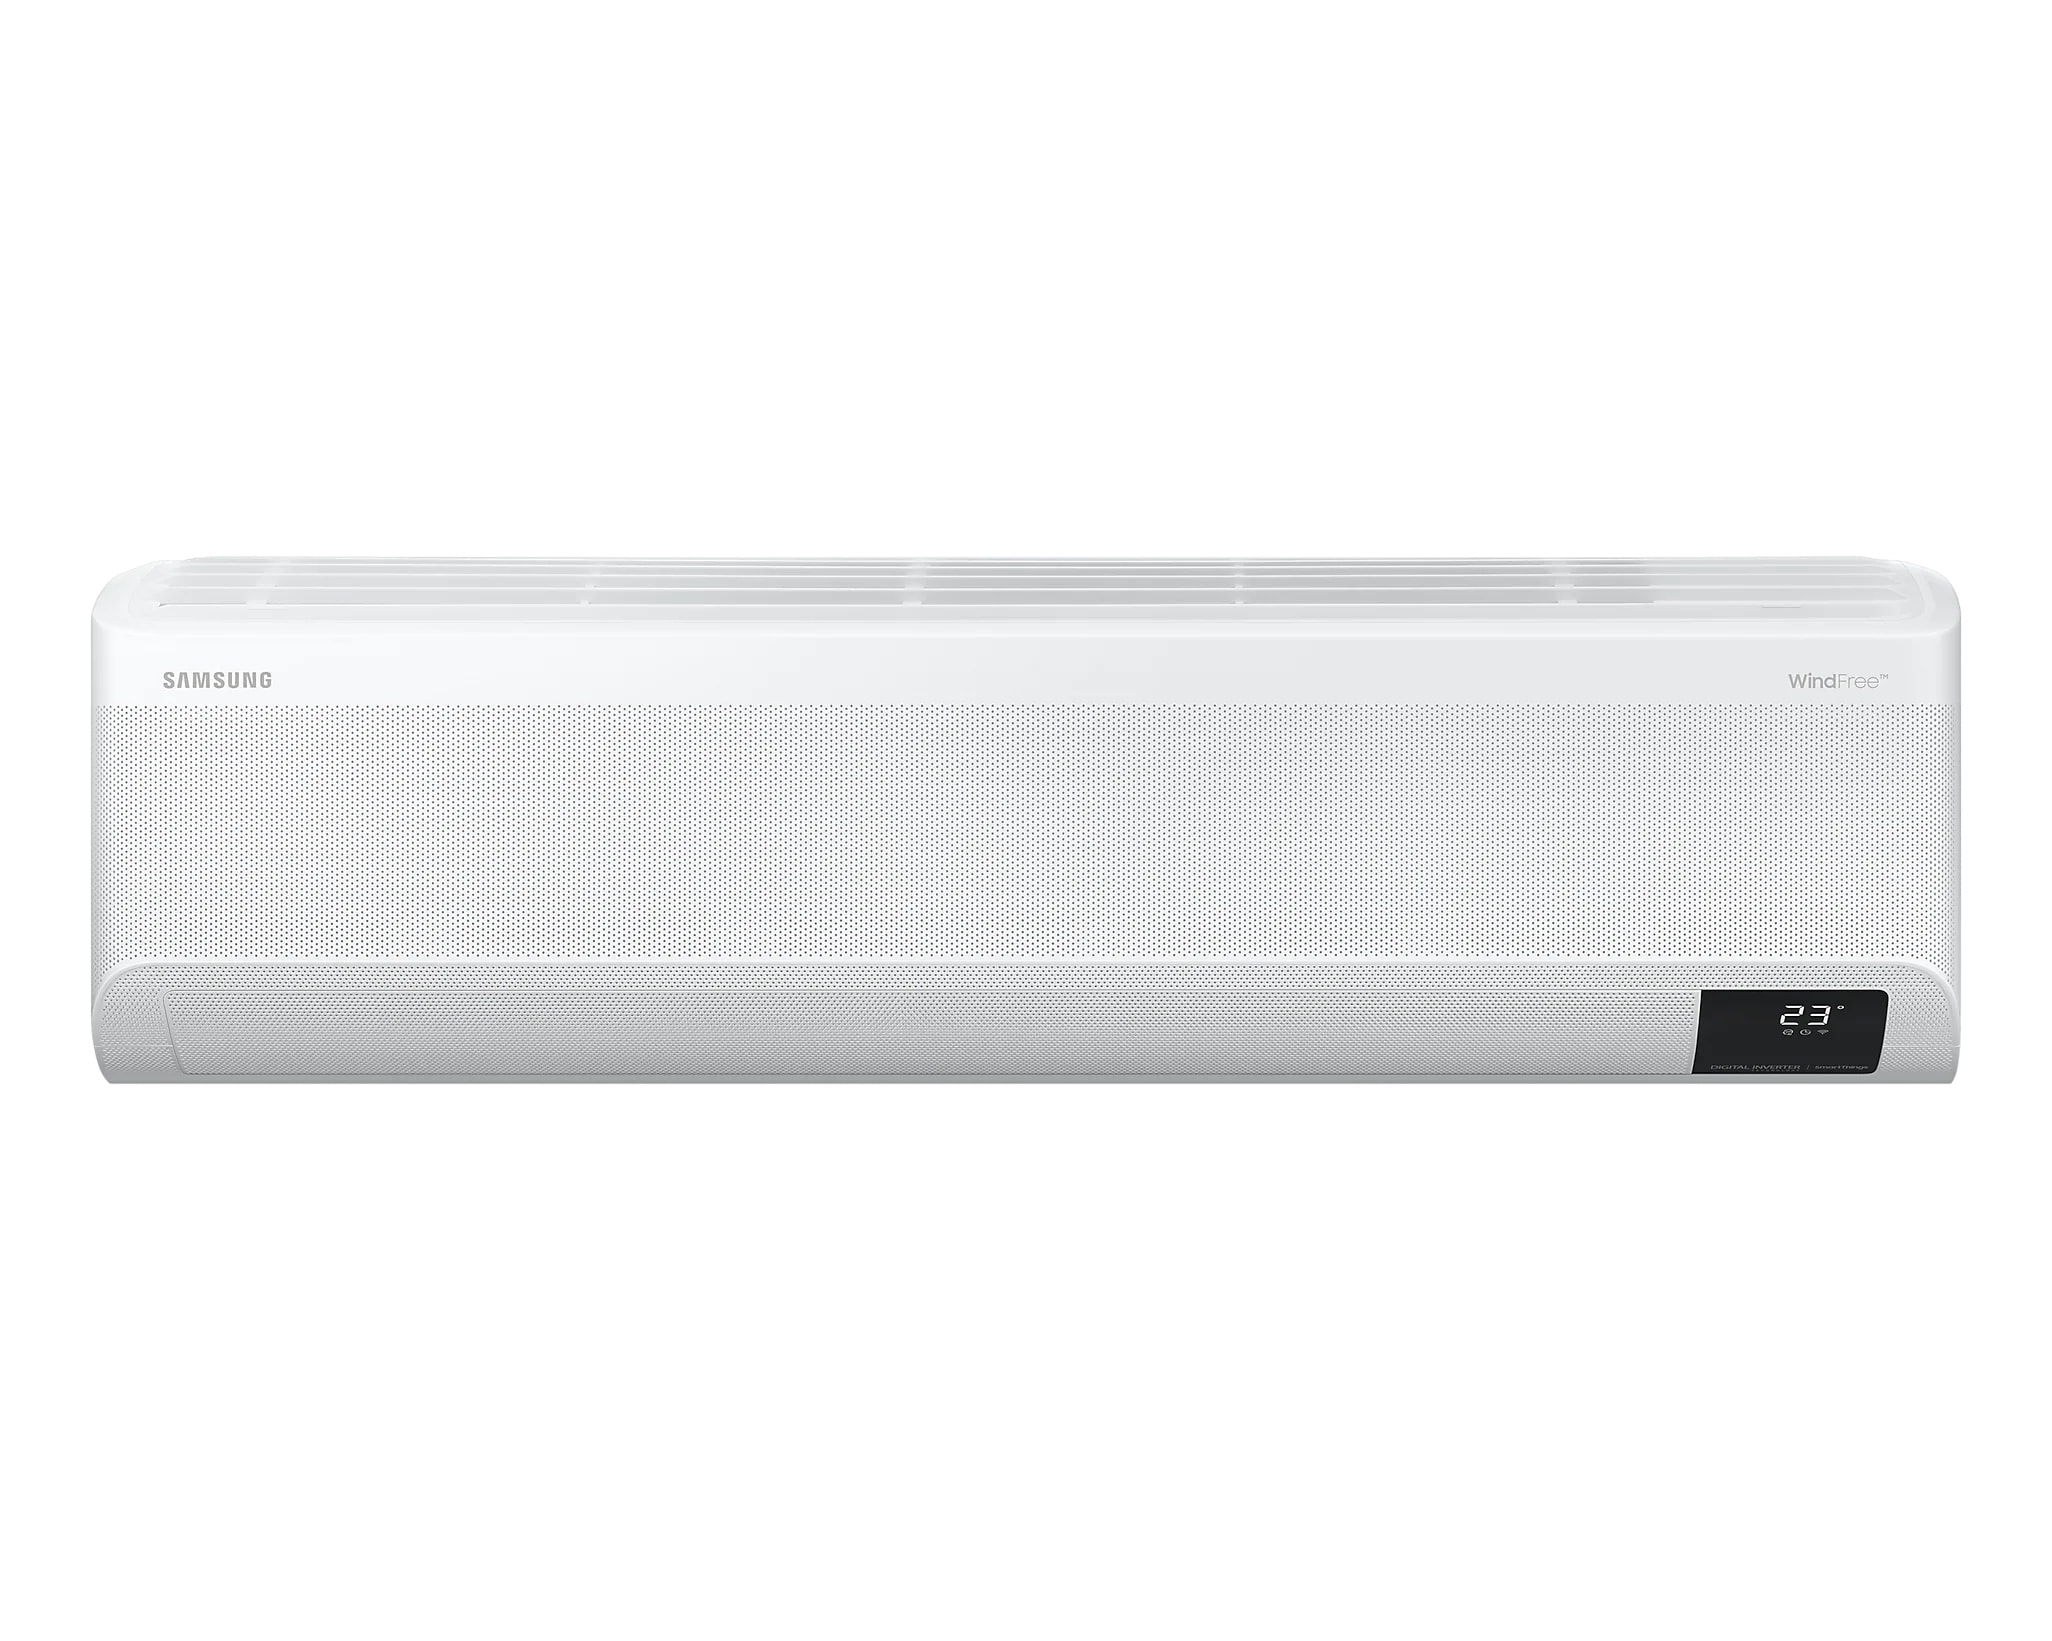 Samsung Windfree™ Premium Plus Smart Air conditioner